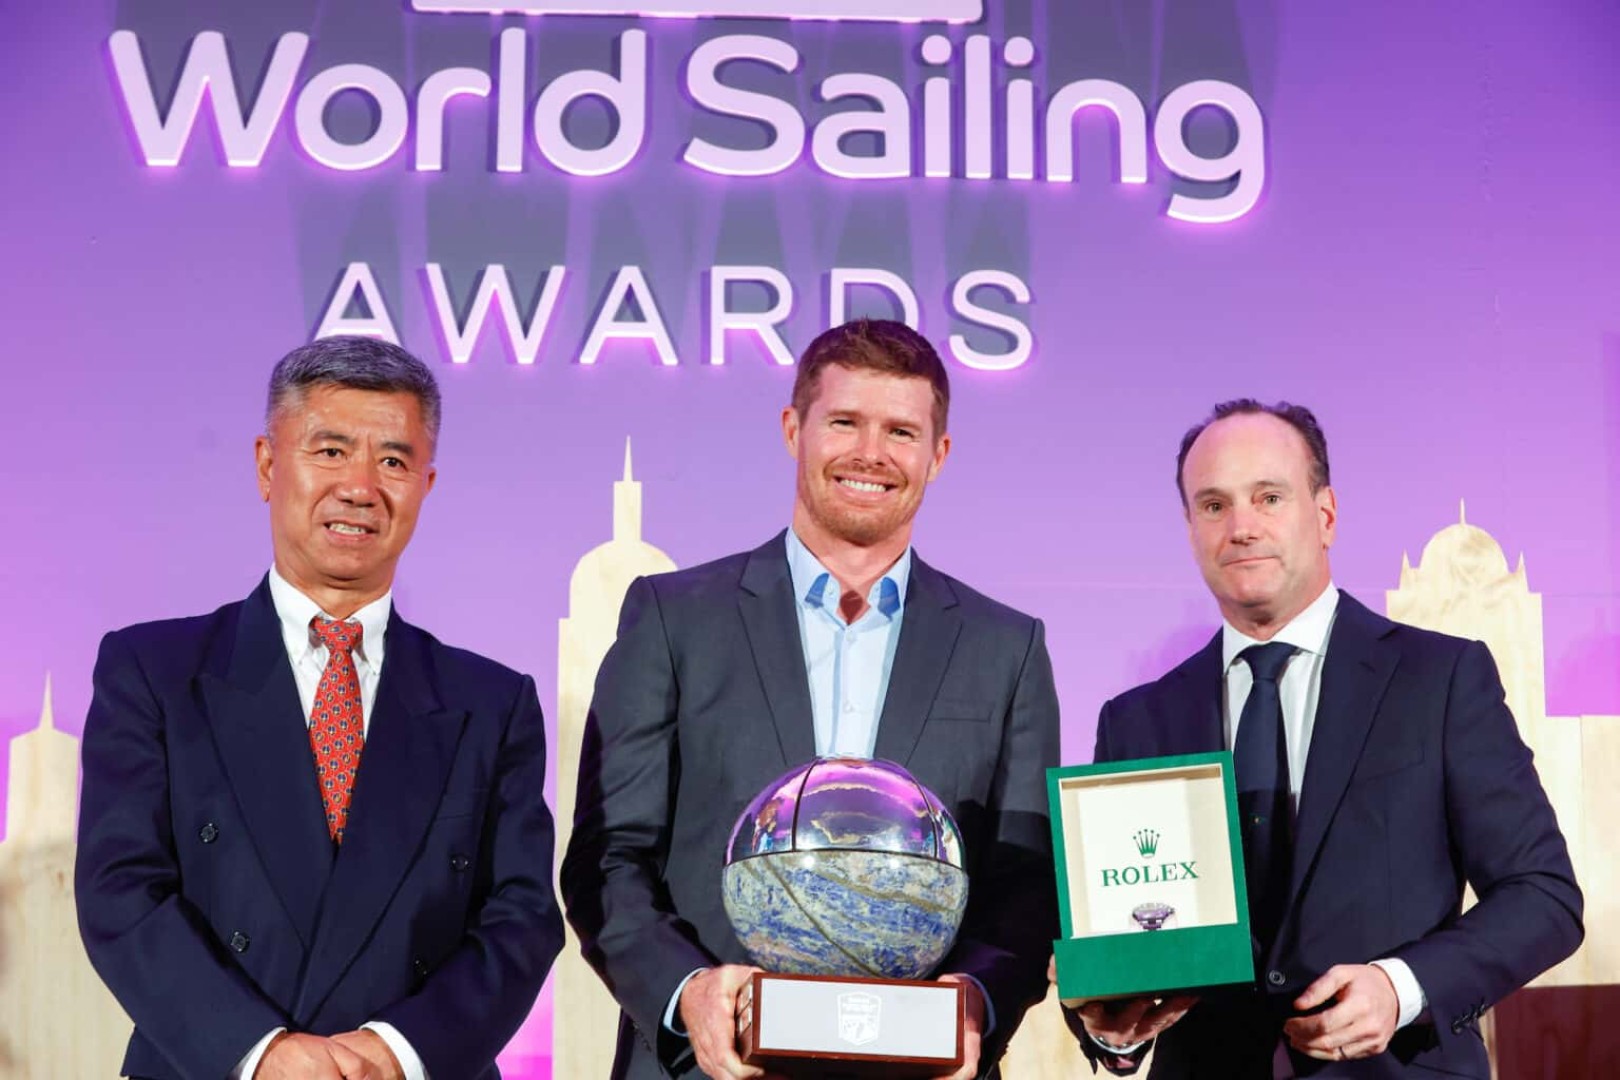 World Sailing Awards ceremony in Málaga